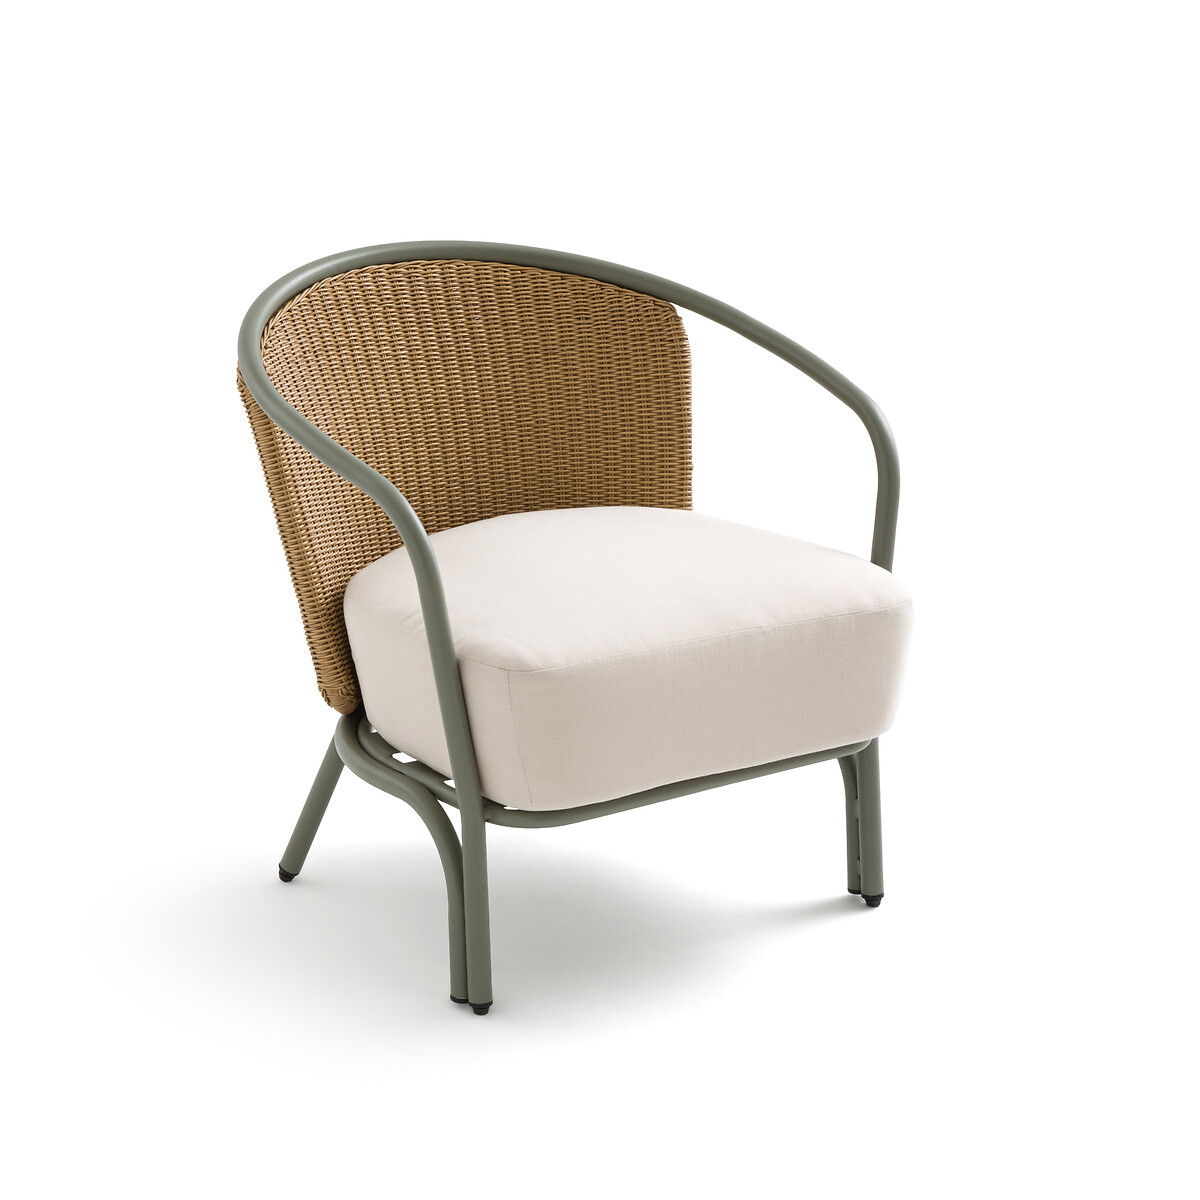 Кресло садовое из стали и полимера Joati единый размер зеленый кресло садовое из стали и полимера sabby единый размер бежевый